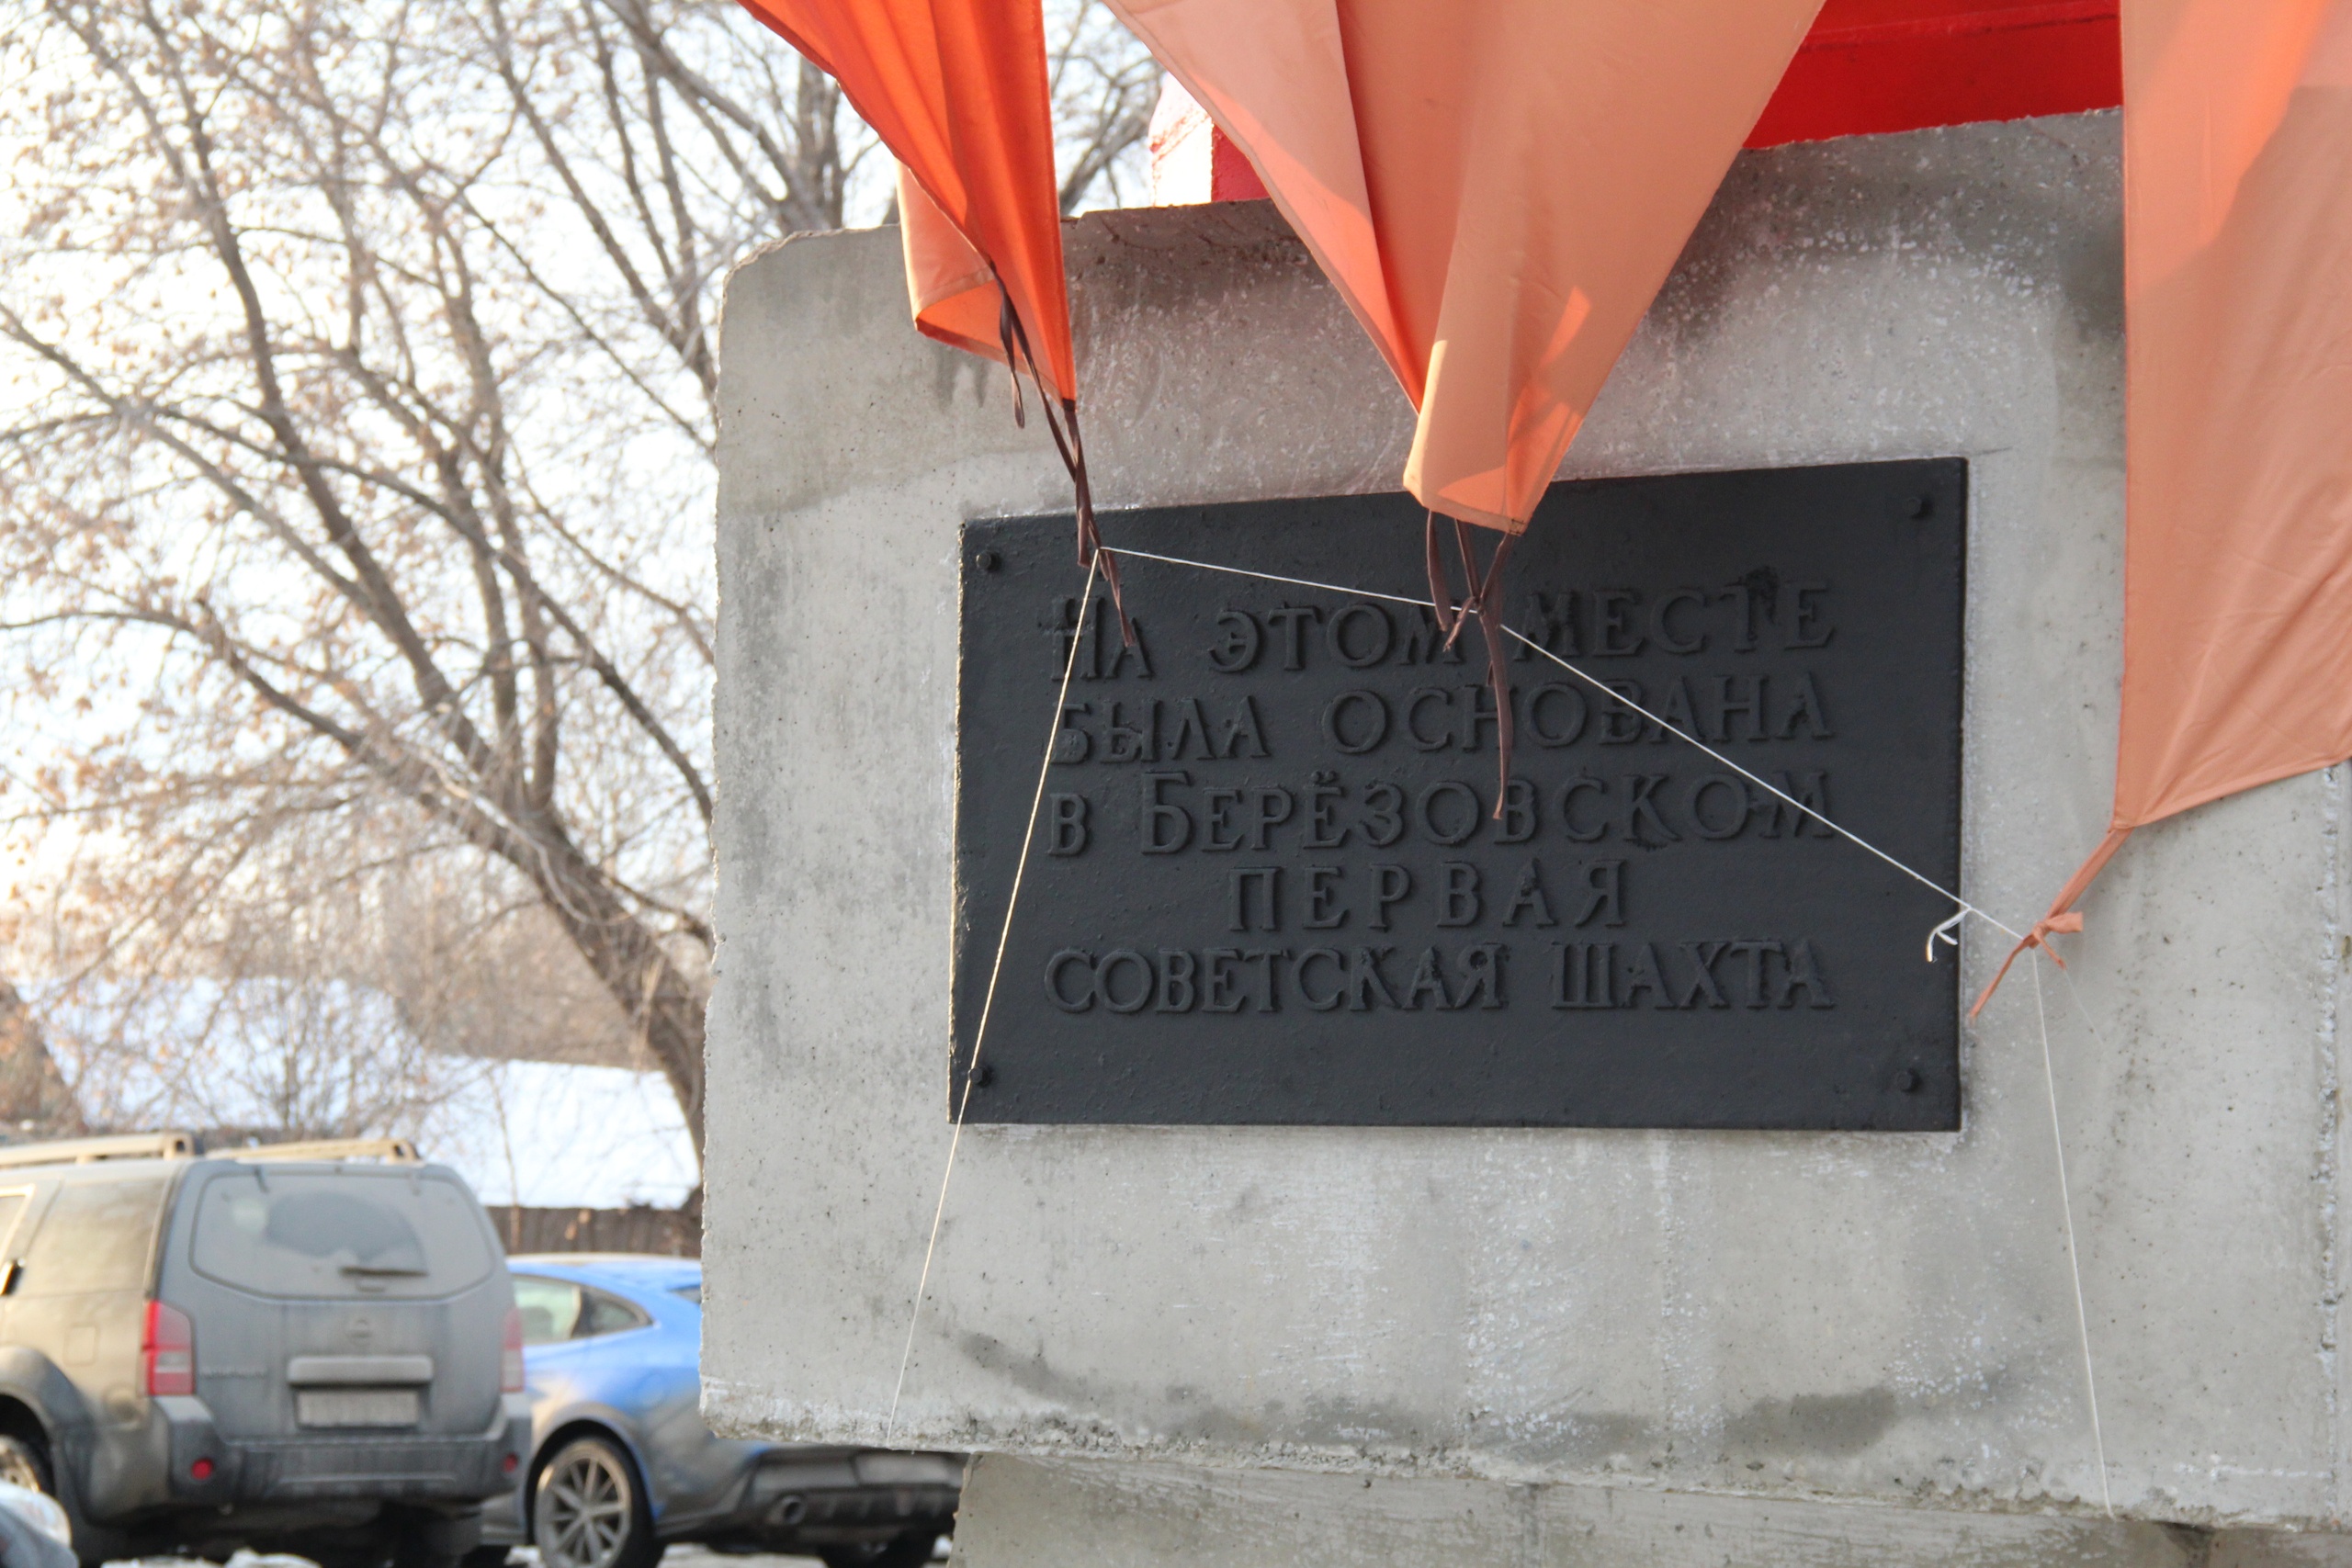 Памятник первой Советской шахте вернулся на Родину. Фото Юлии Квачёвой